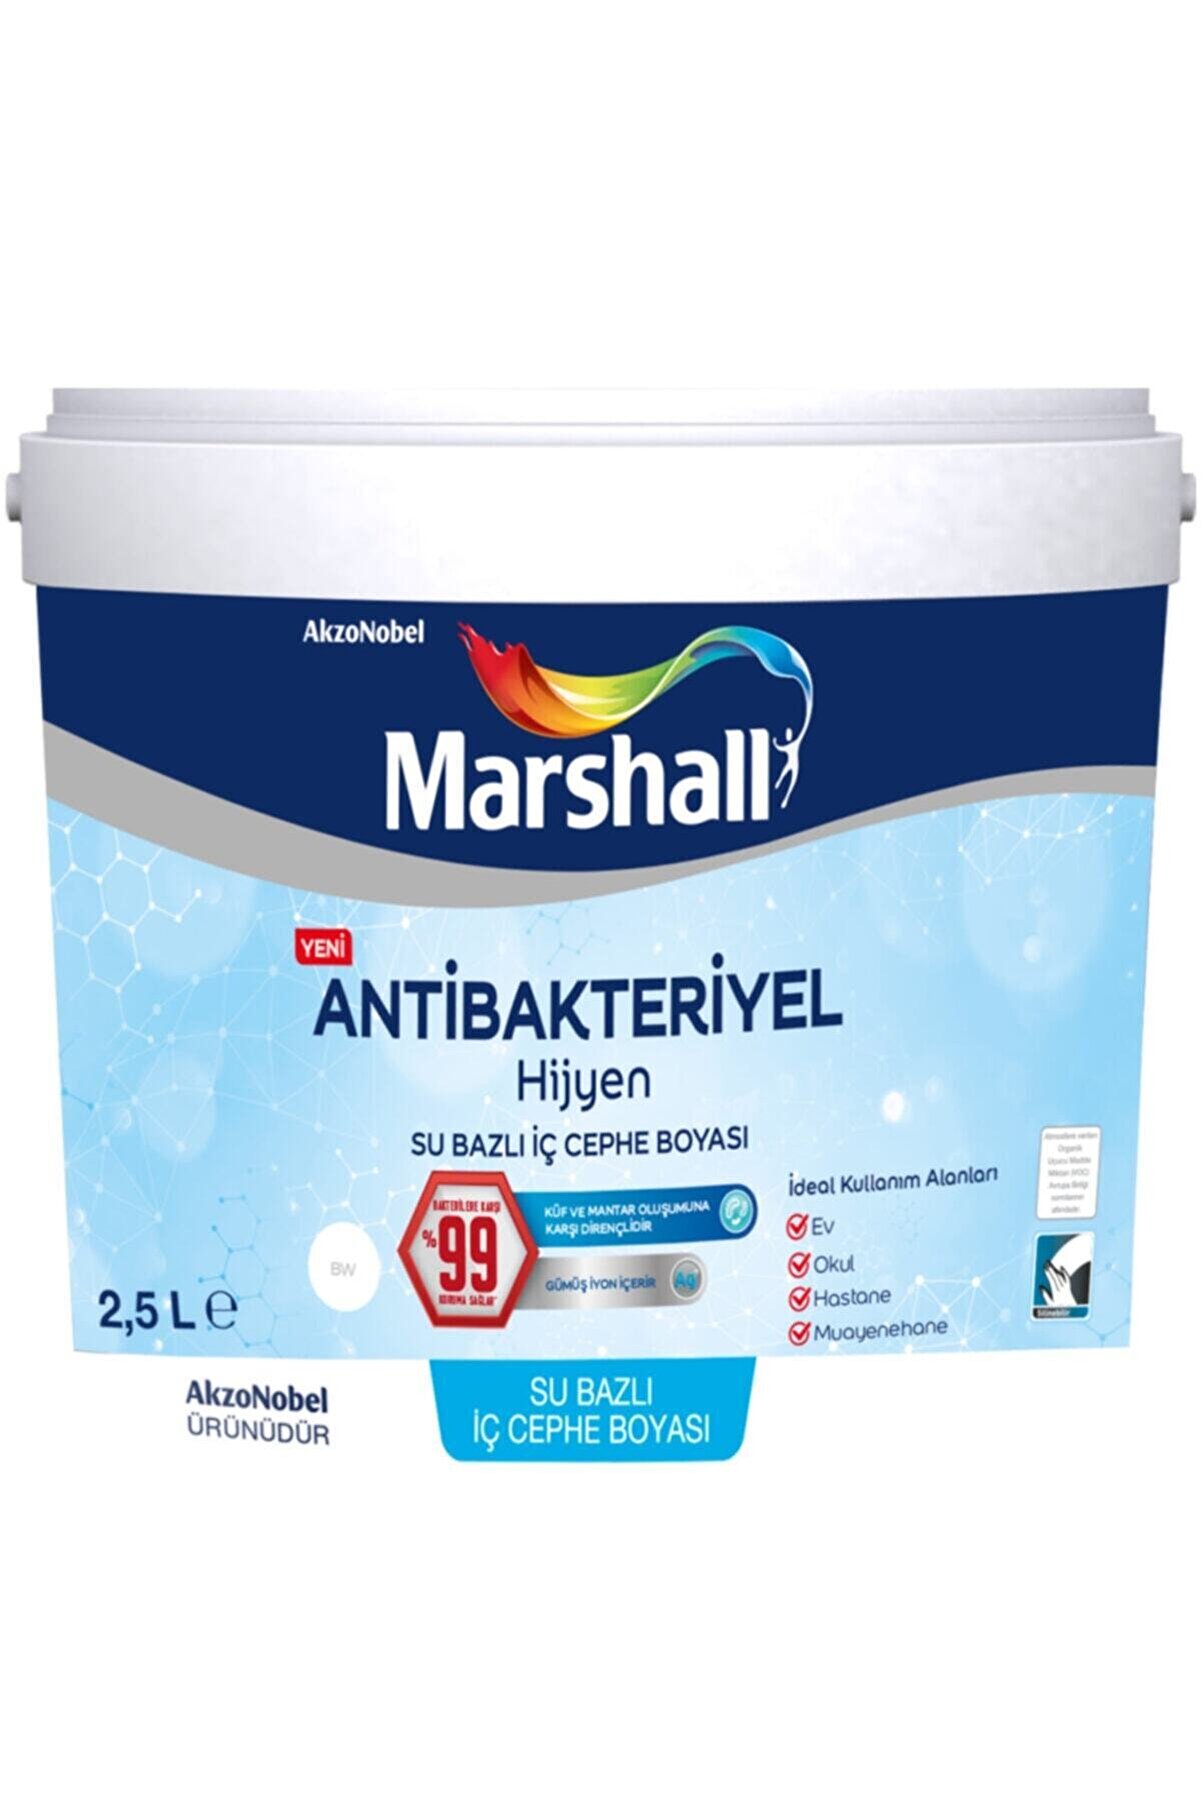 Marshall Antibakteriyel Hijyen Iç Cephe Duvar Boyası 2,5 Lt Islak Kum